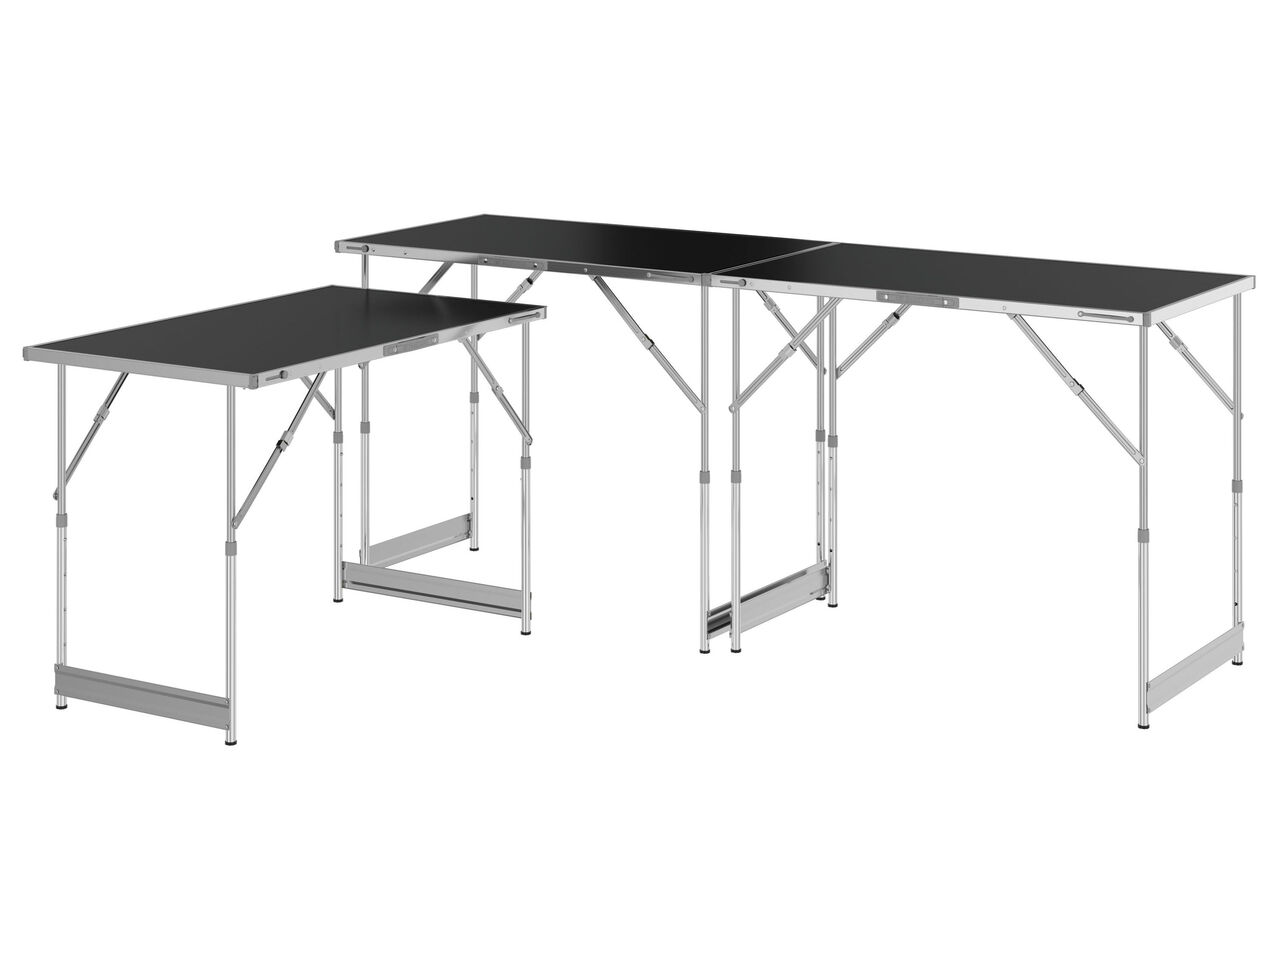 PARKSIDE® Stół wielofunkcyjny , cena 299 PLN 

- 3 elementy stołu z możliwością ...